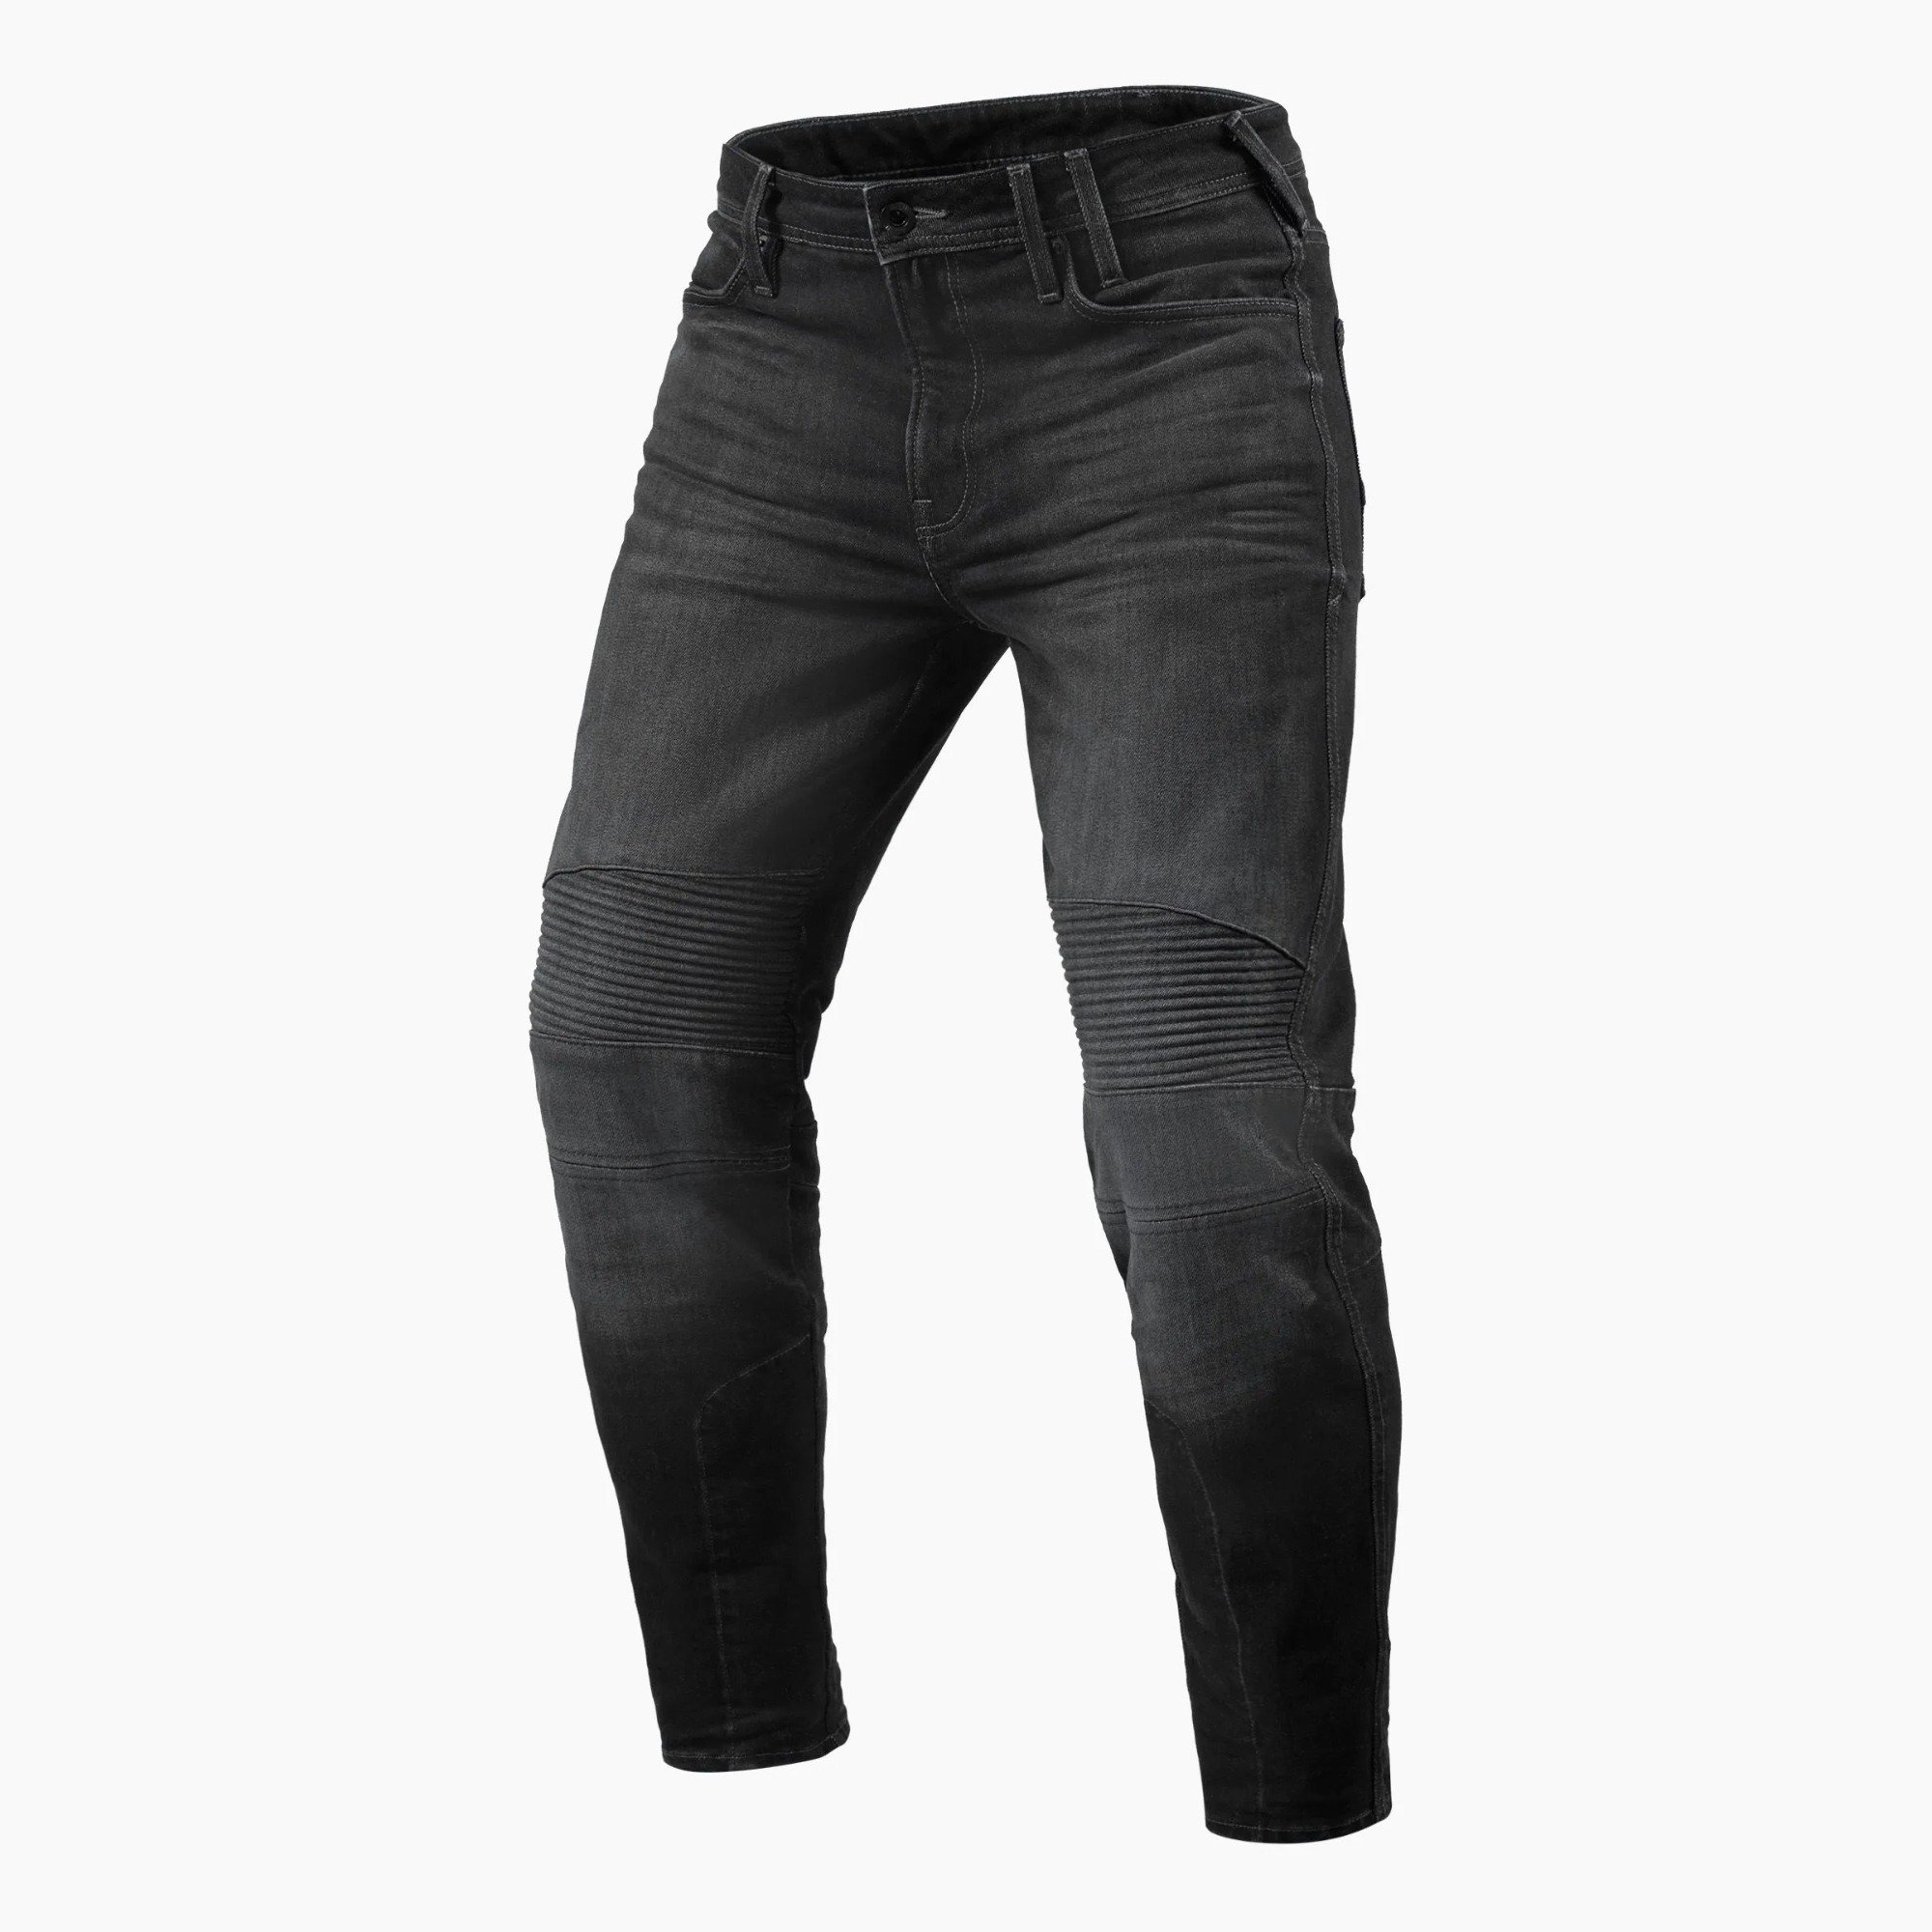 Image of REV'IT! Jeans Moto 2 TF Dark Grey Used Motorcycle Jeans Size L34/W31 EN